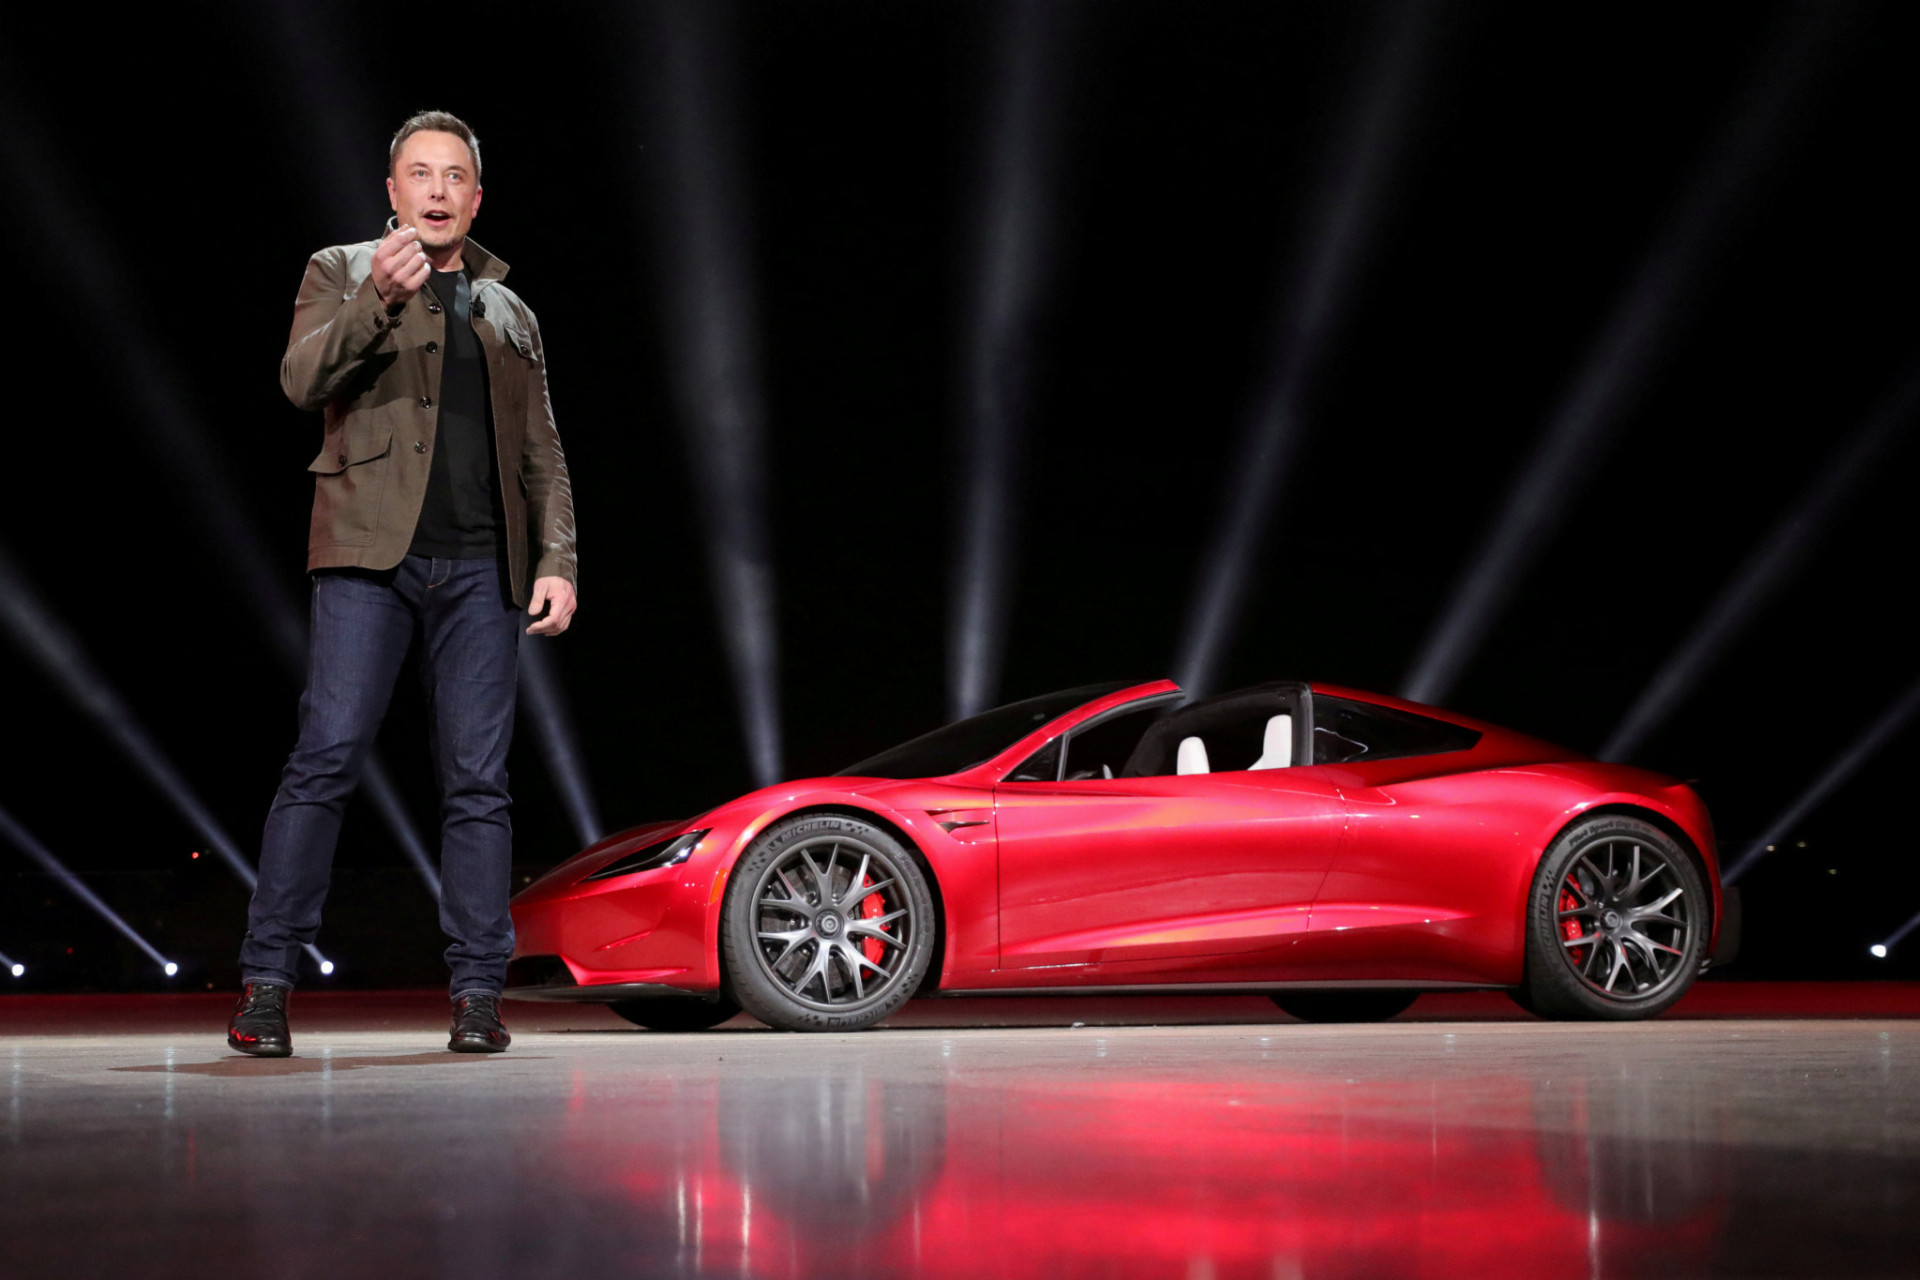 Tesla je svetovým lídrom v oblasti technológie elektrických vozidiel. Spoločnosť bola založená v roku 2003 Martinom Eberhardom a Marcom Tarpenningom, ktorý financoval spoločnosť až do ukončenia prvého kola investícií v roku 2004. Musk tam začínal ako predseda predstavenstva, ale po tom ako musela firma v roku 2008 čeliť finančnej kríze, nastúpil do funkcie generálneho riaditeľa.

V roku 2014 spoločnosť uvoľnila všetky svoje patenty pre verejnosť, čím ich dovolila používať "v dobrej viere" každému, kto chce vyrábať elektrické autá. Muskova ročná mzda od Tesly je len 1 dolár.
